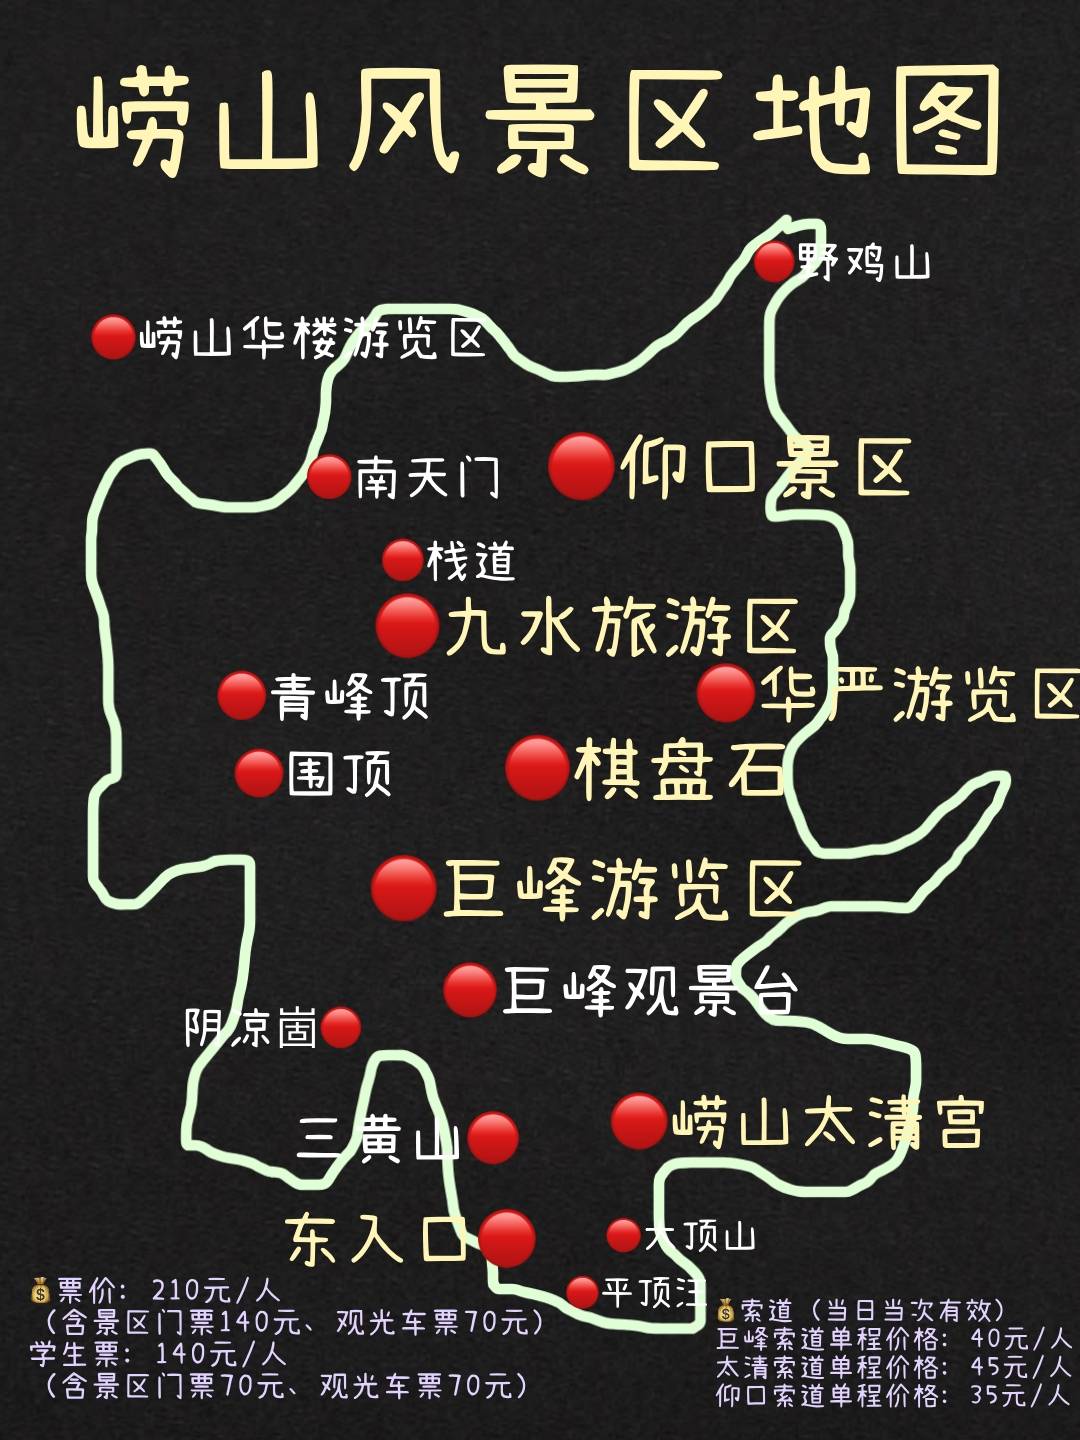 青岛旅游行李寄存攻略青岛地铁景点地图门票及青岛美食